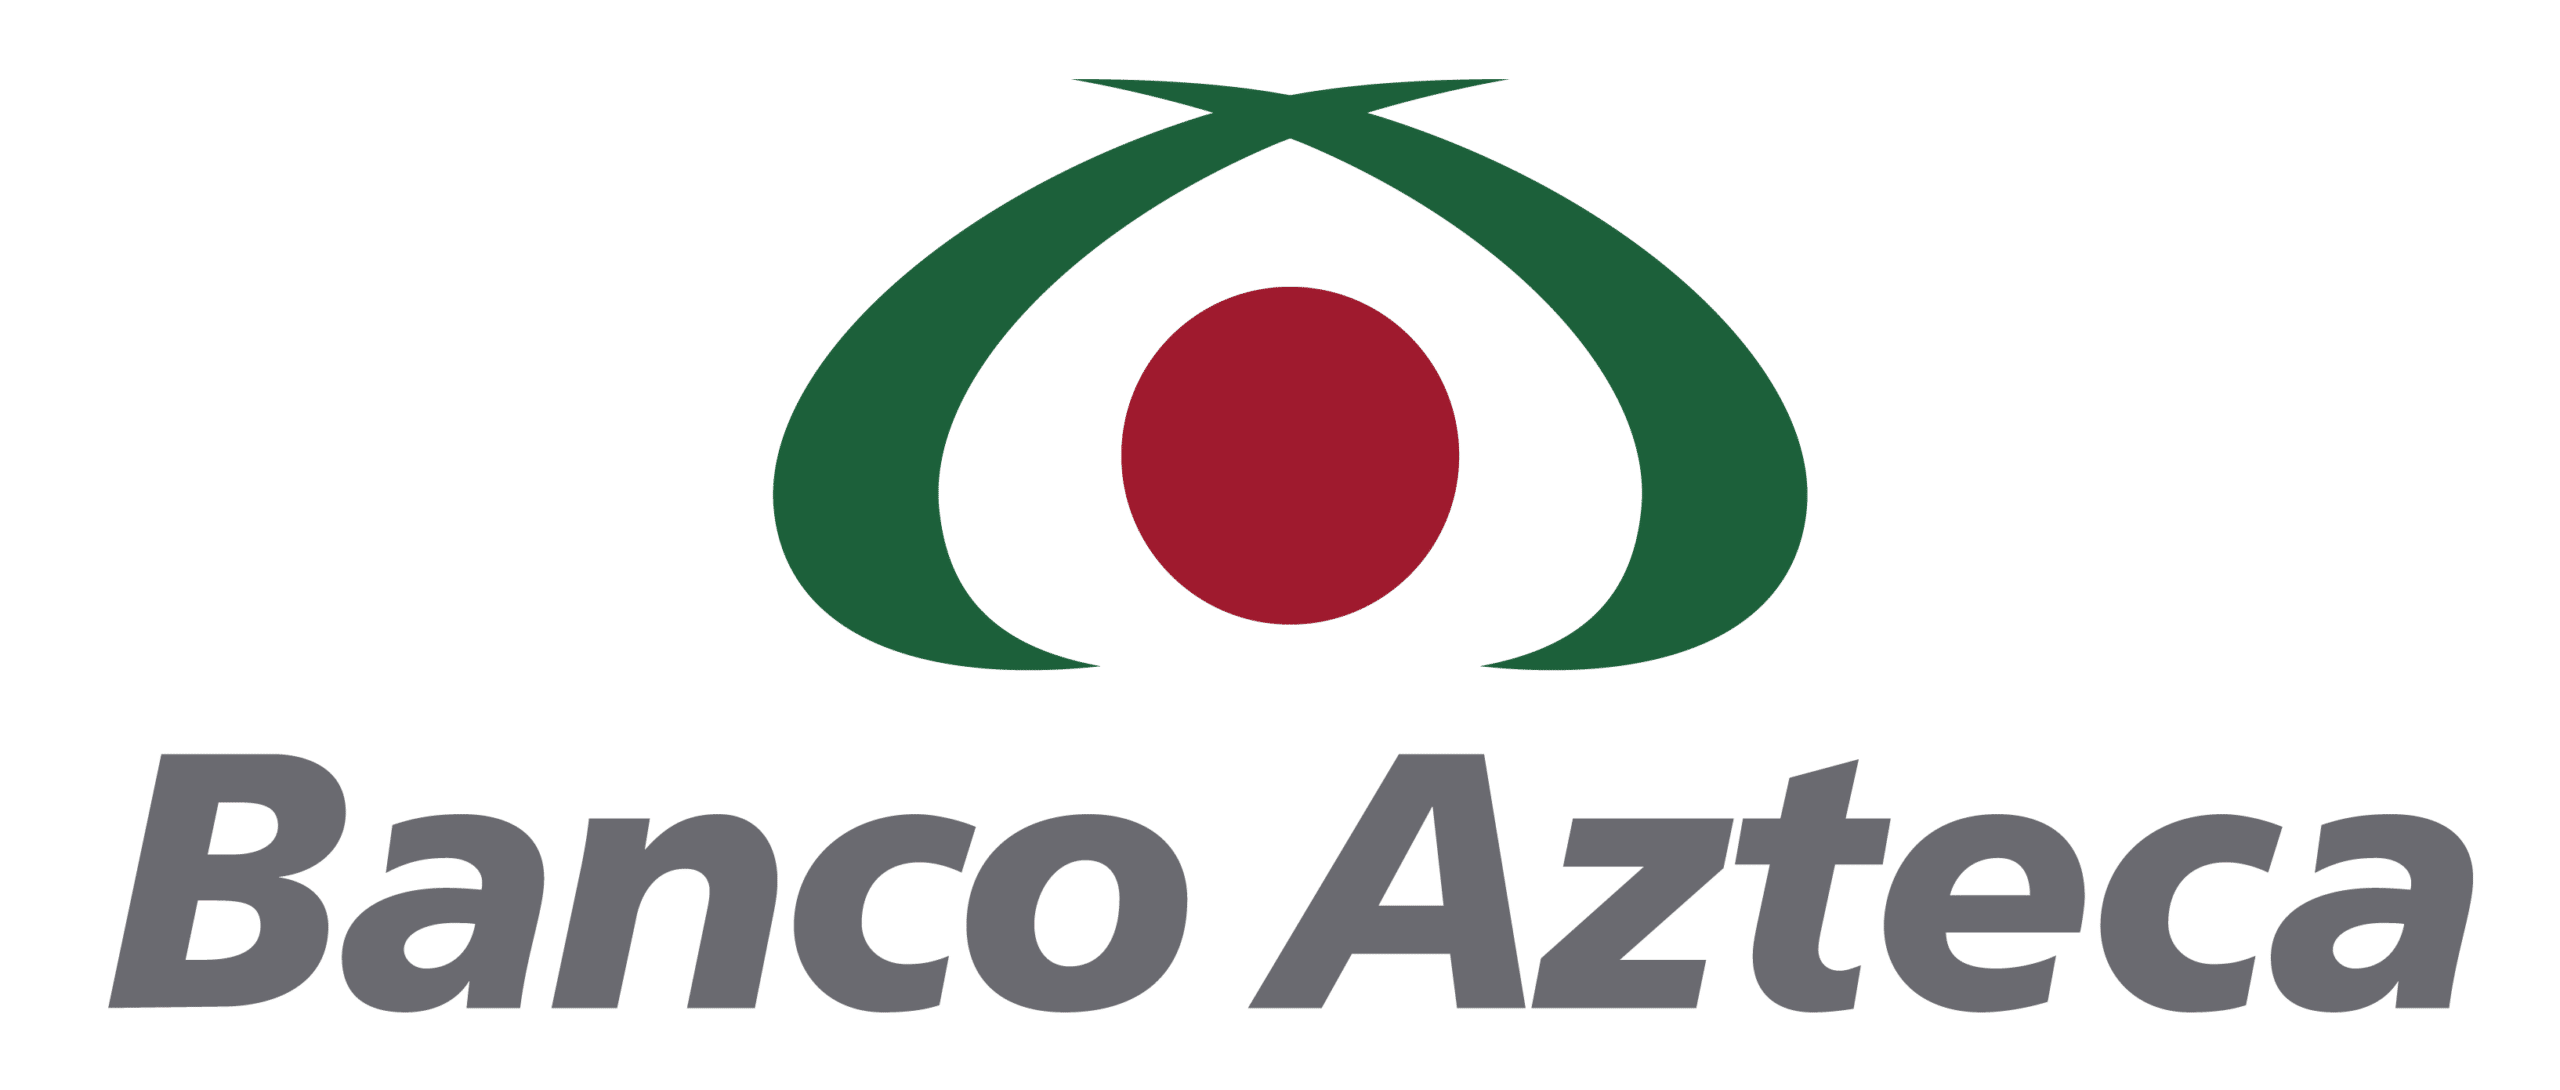 cuenta-basica-azteca-requisitos-caracteristicas-comisiones